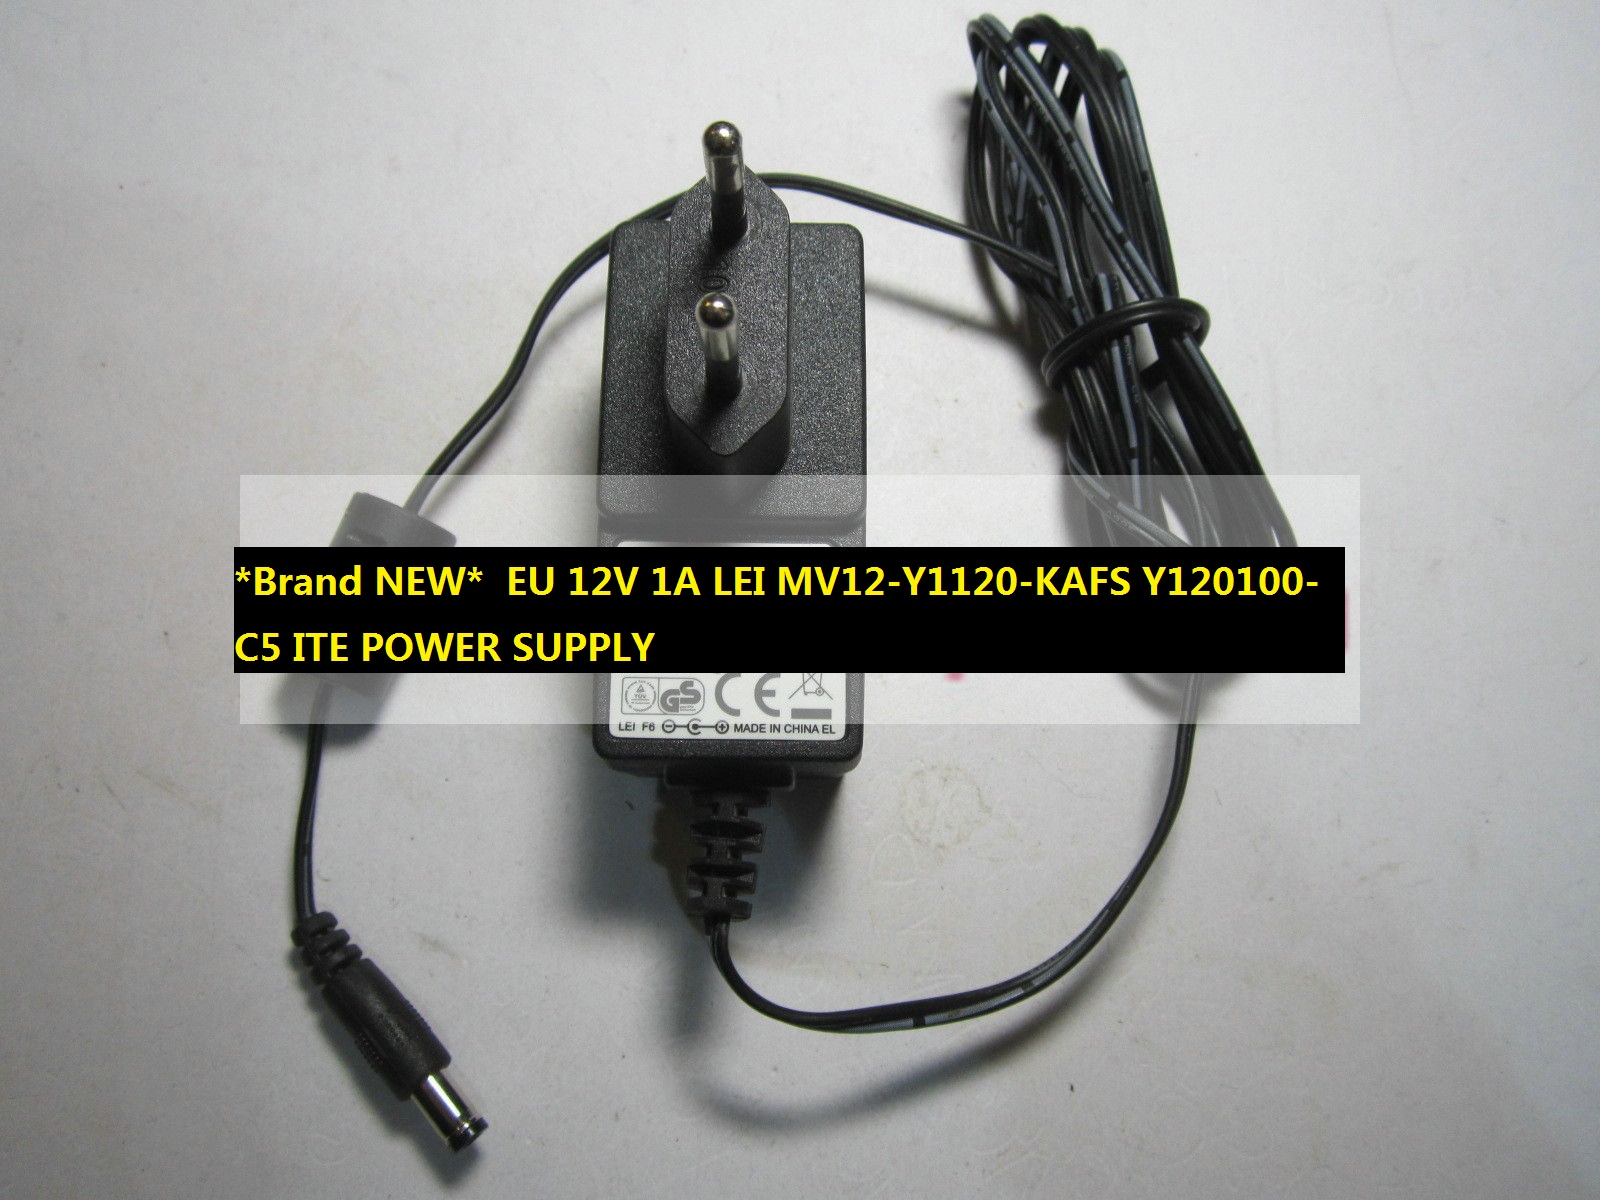 *Brand NEW* EU 12V 1A LEI MV12-Y1120-KAFS Y120100-C5 ITE POWER SUPPLY